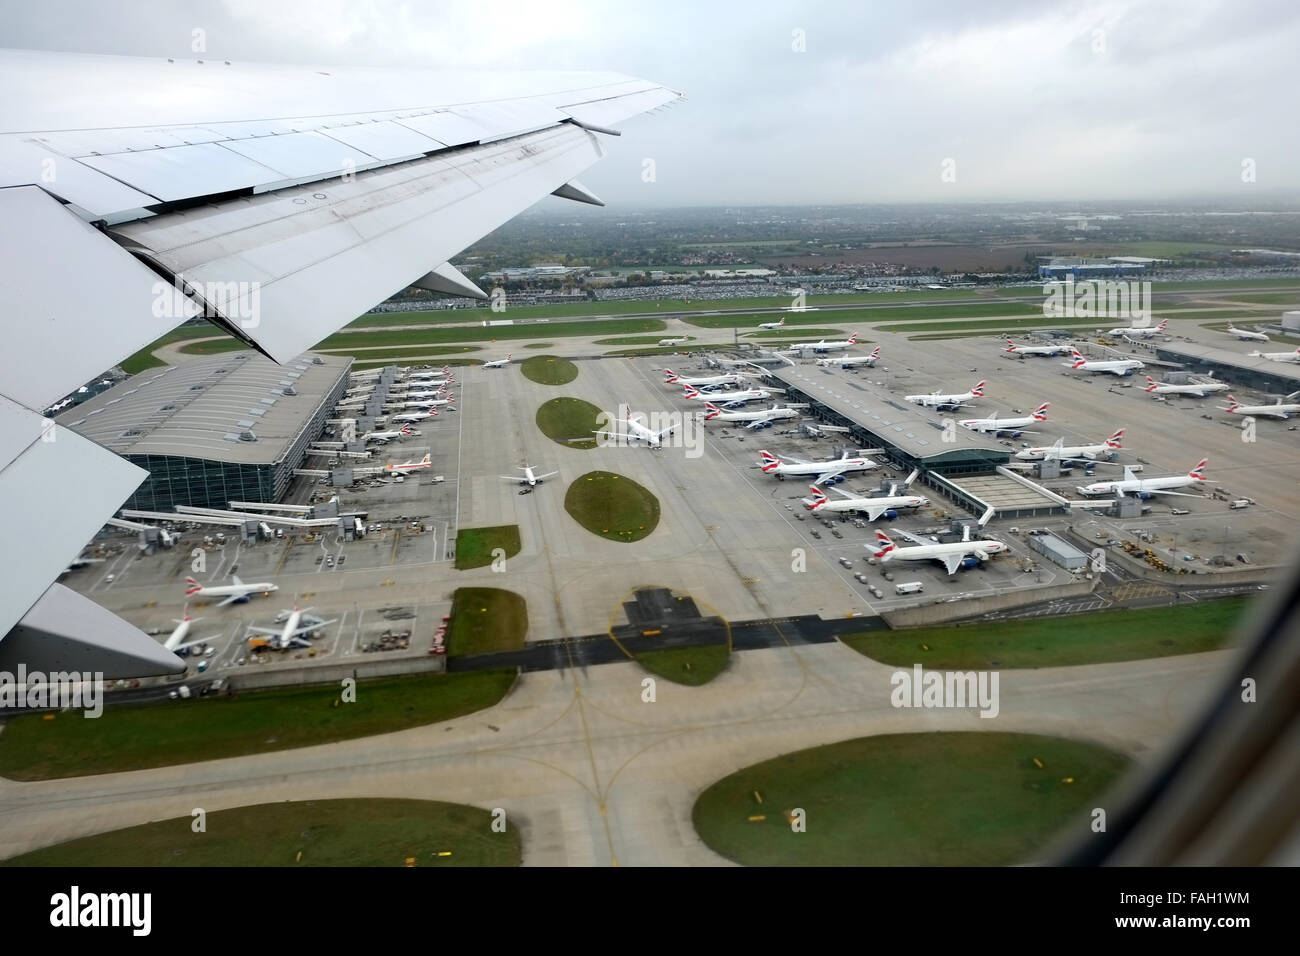 Ein Schuß aus einem Flugzeug, wie es Geschichten vom Flughafen Heathrow, London, Großbritannien. Flugzeuge am Boden gegen das Terminal geparkt. Stockfoto